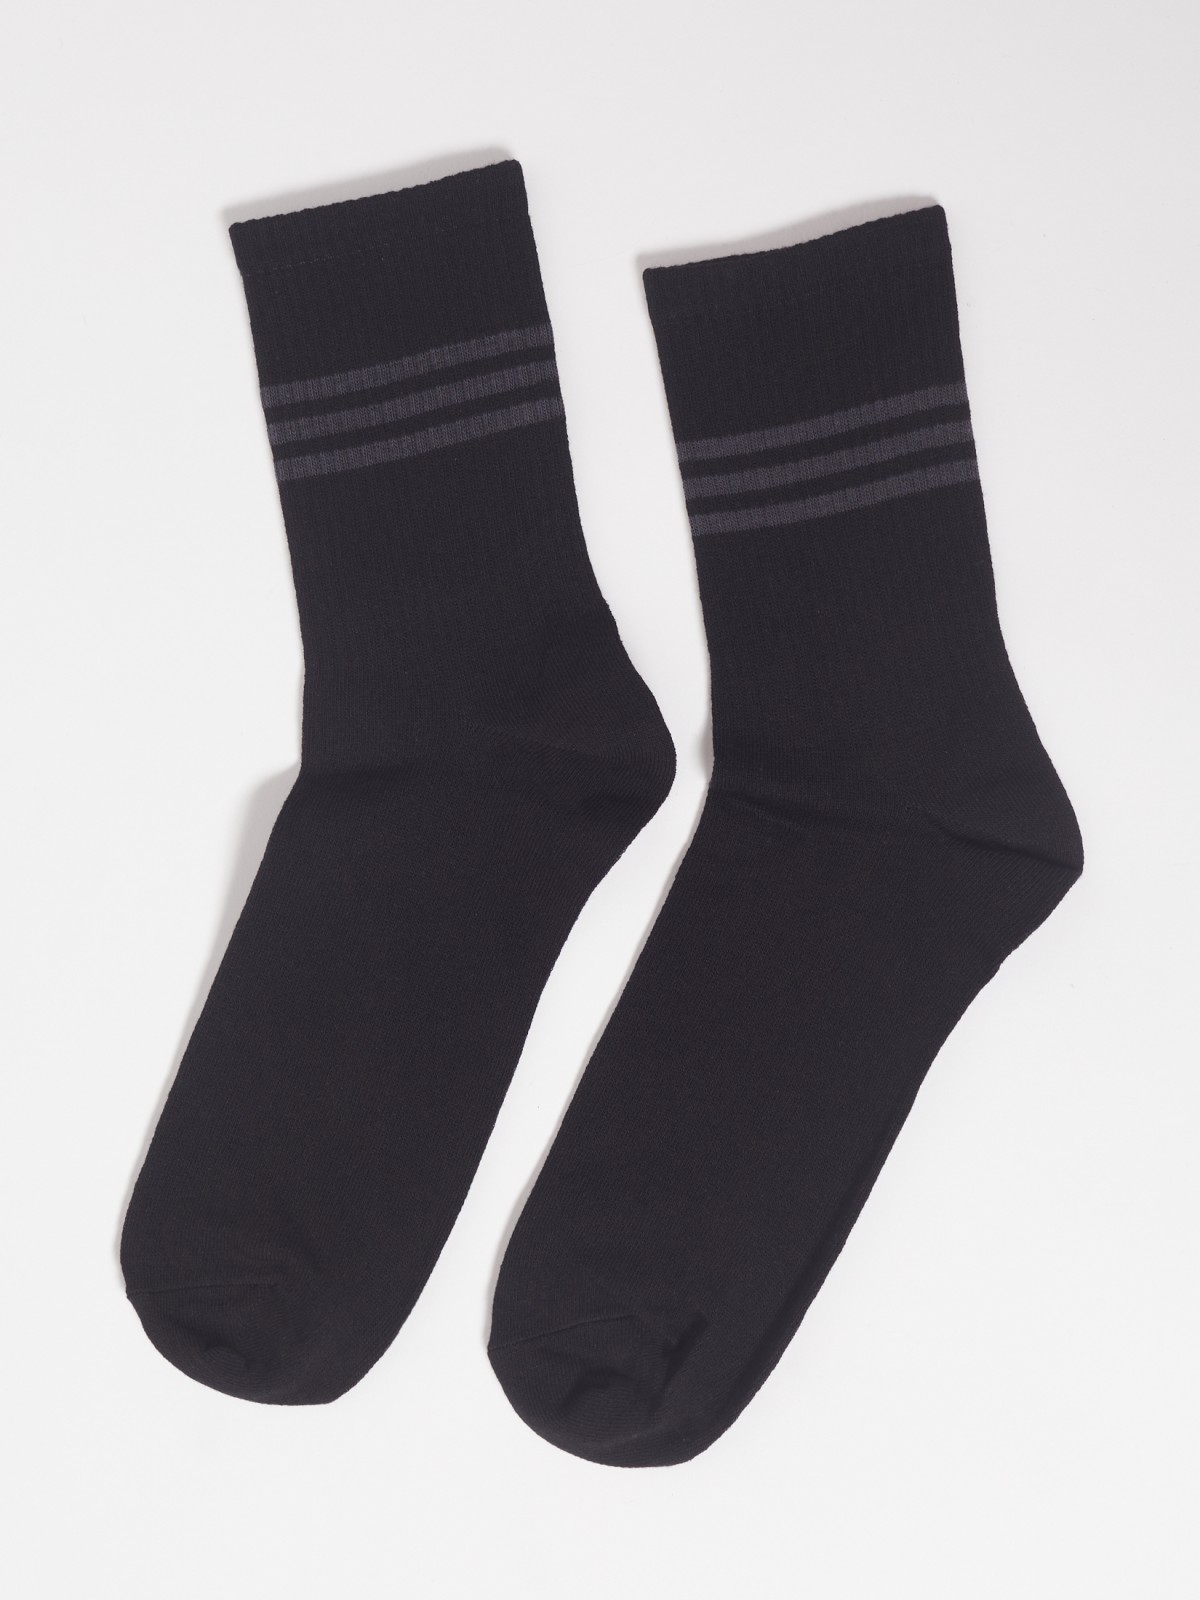 Набор высоких носков (3 пары в комплекте) zolla 01311998J185, цвет черный, размер 25-27 - фото 3